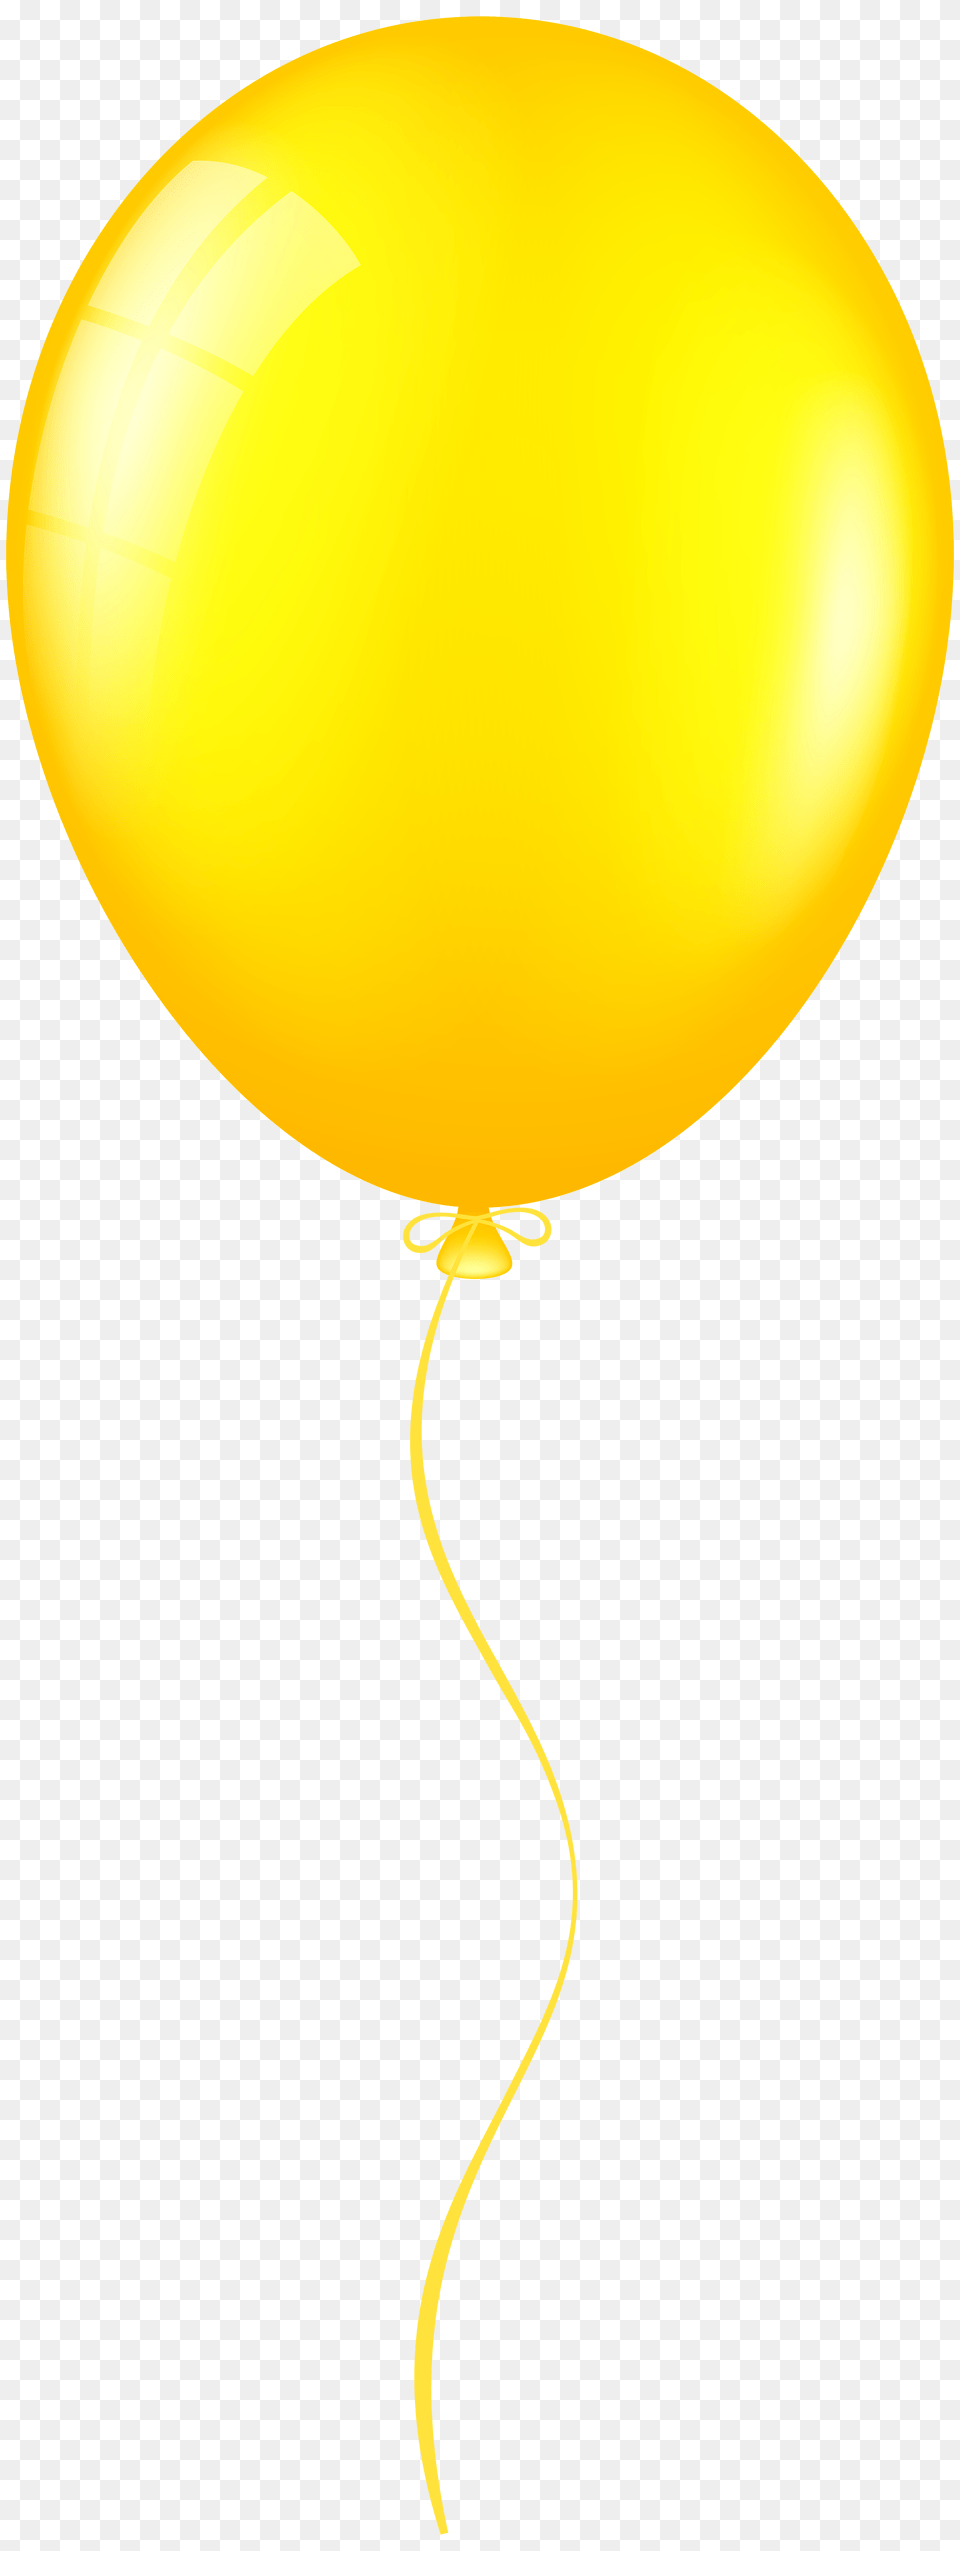 Orange Balloon Clip Art Free Png Download